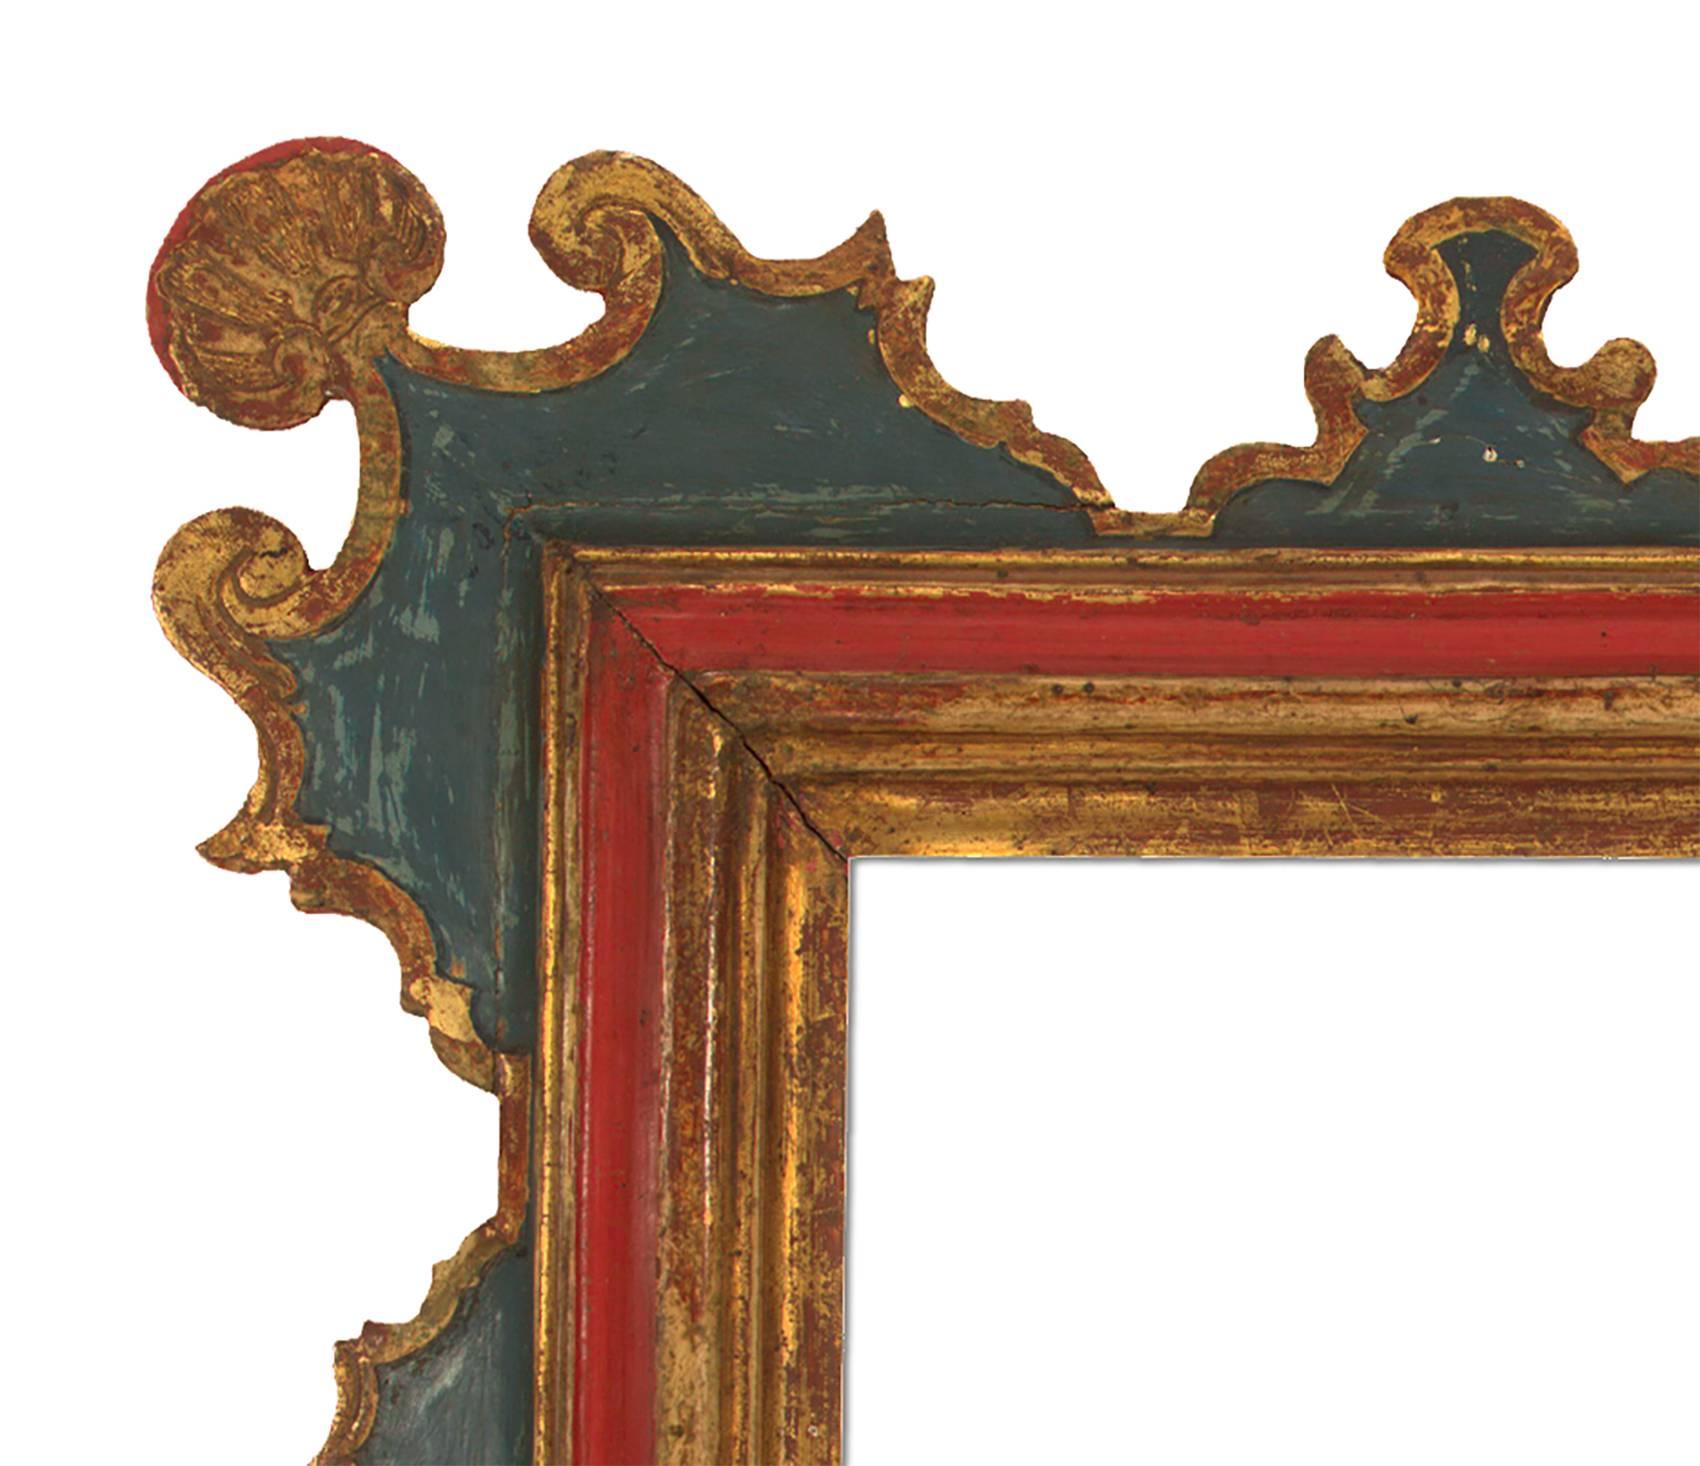 Miroir sculpté et doré dans le style espagnol du XIXe siècle, peint à la main et patiné. Mesures : 20